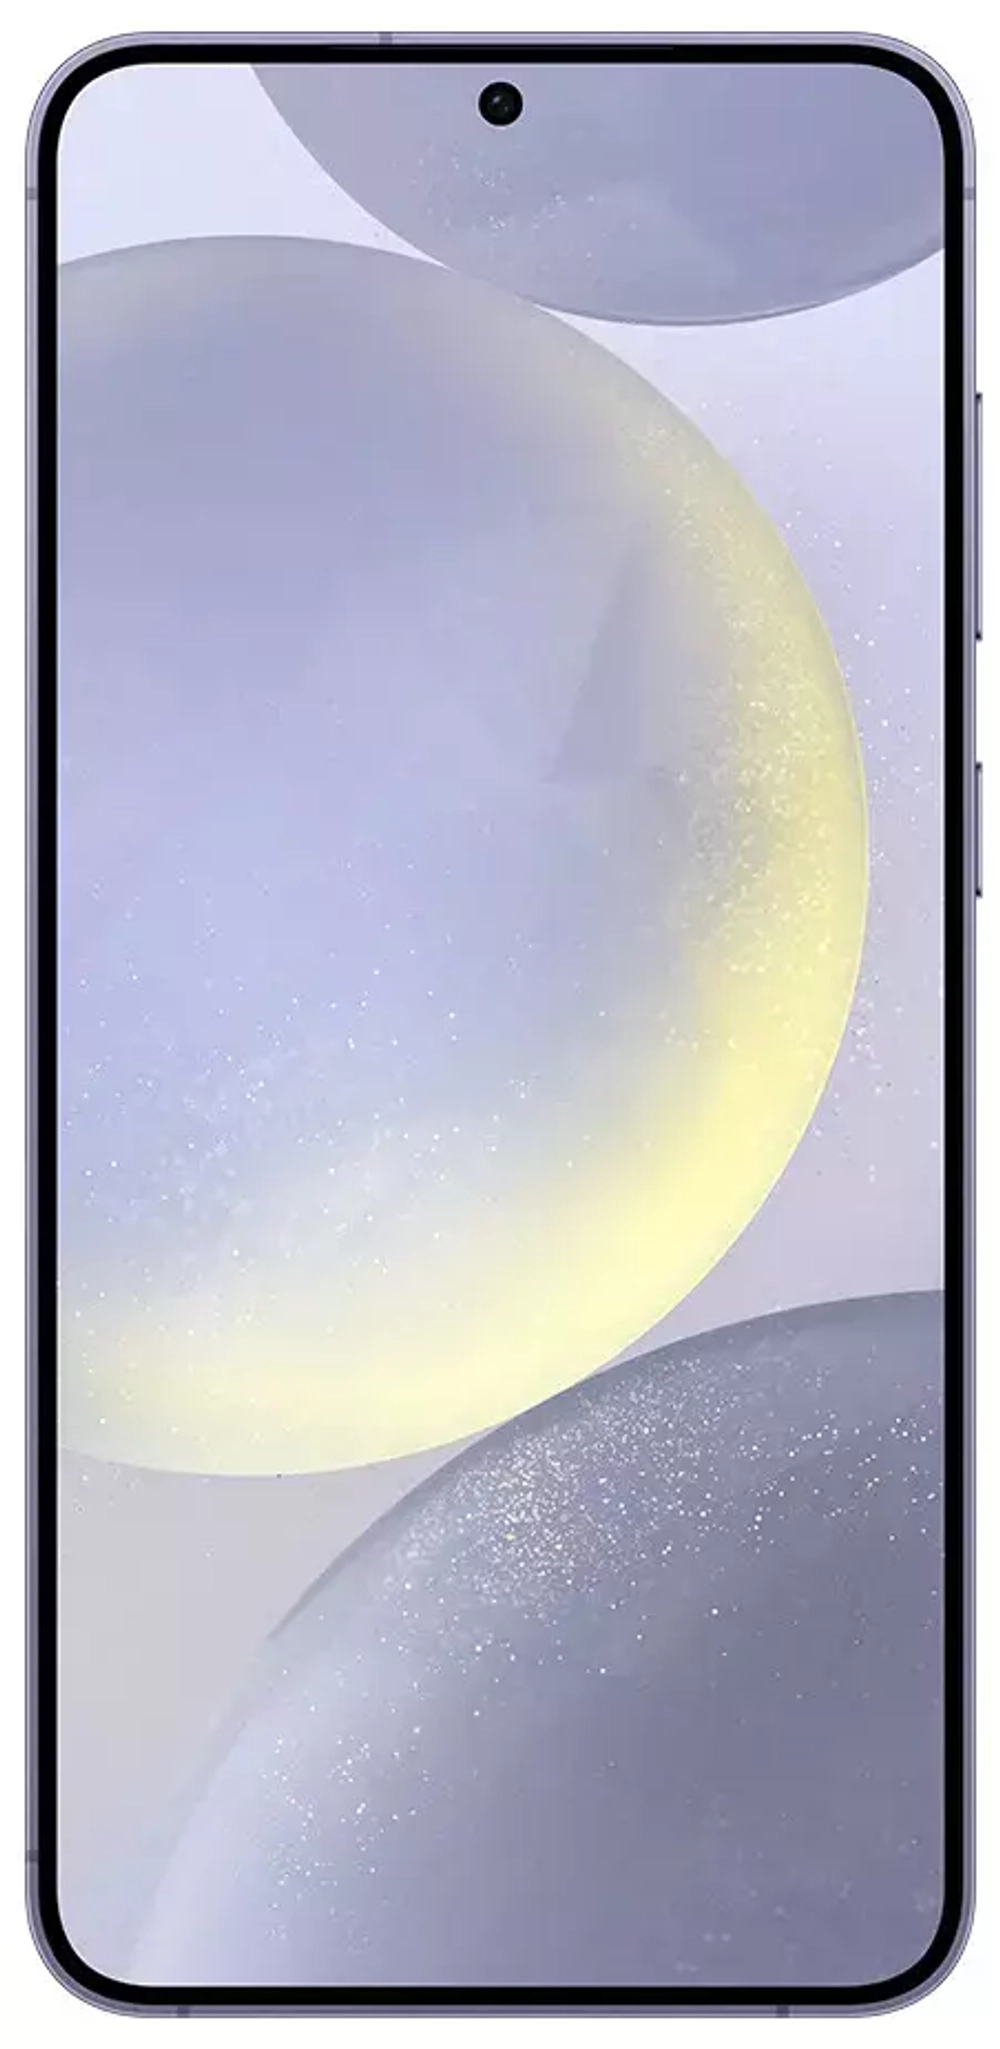 Samsung Galaxy S24 8/256Gb Cobalt Violet (Фиолетовый)